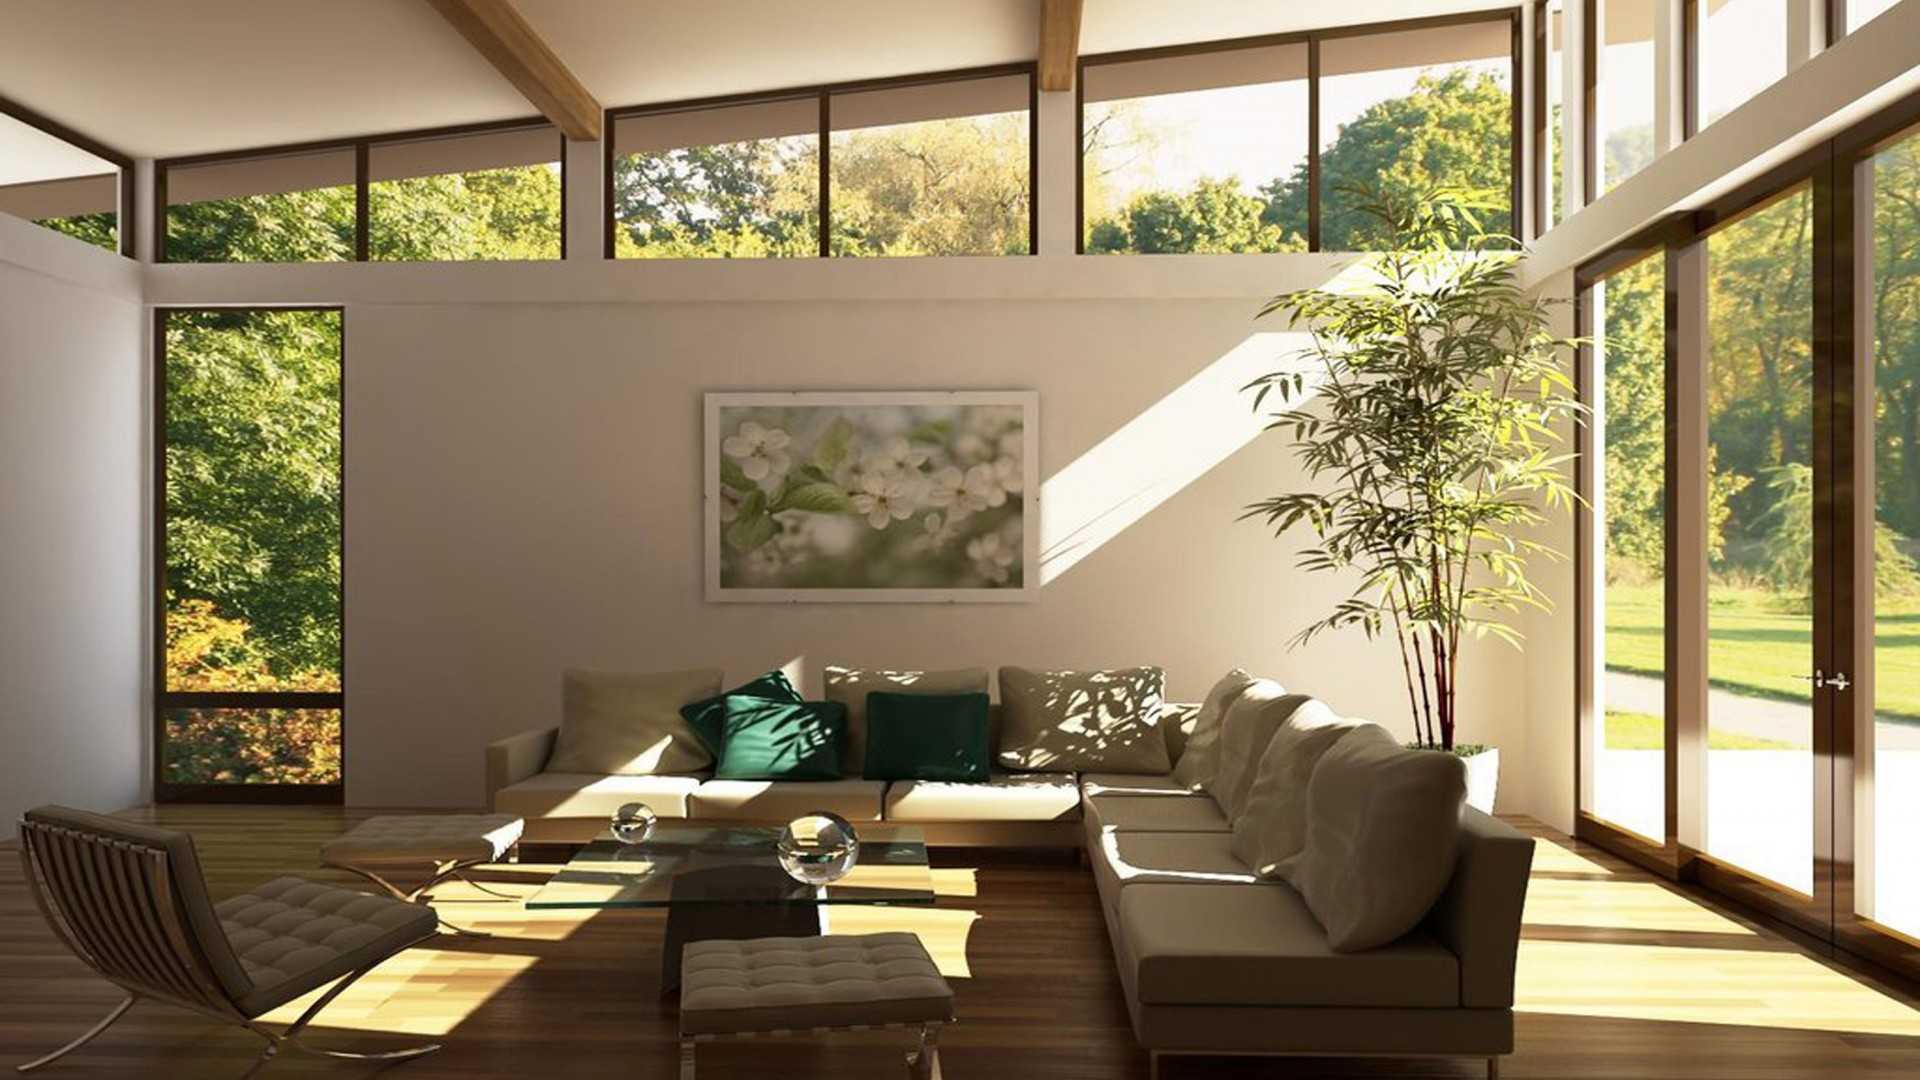  Moderna sala de estar o salon con ventanales de cristal y muebles estilo IKEA